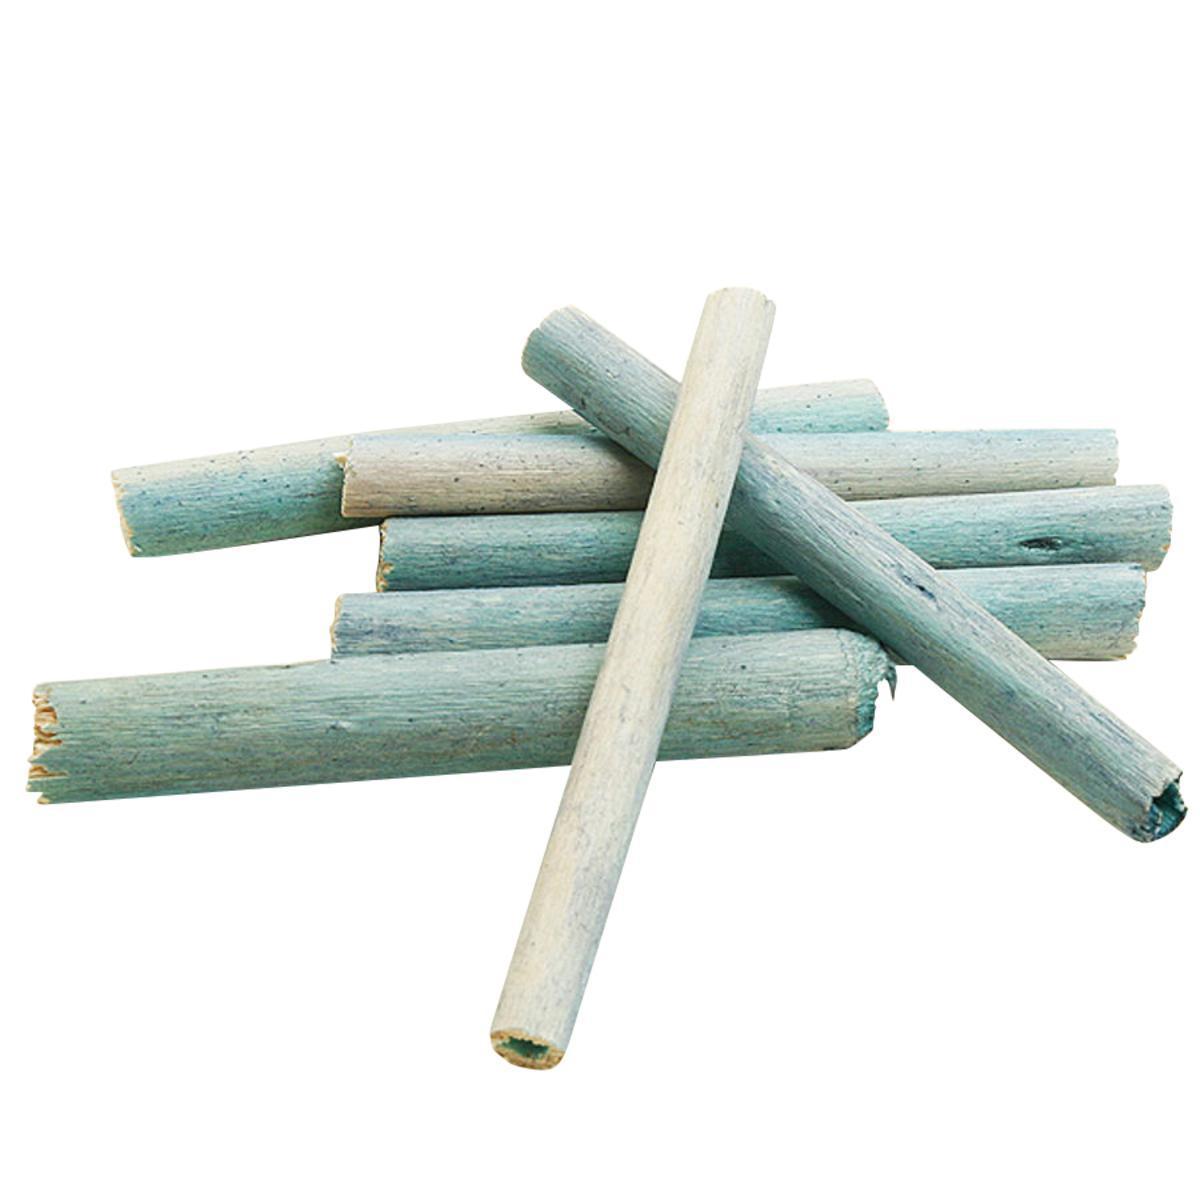 20 bâtonnets décoratifs - Bois - H 8 cm - Bleu turquoise